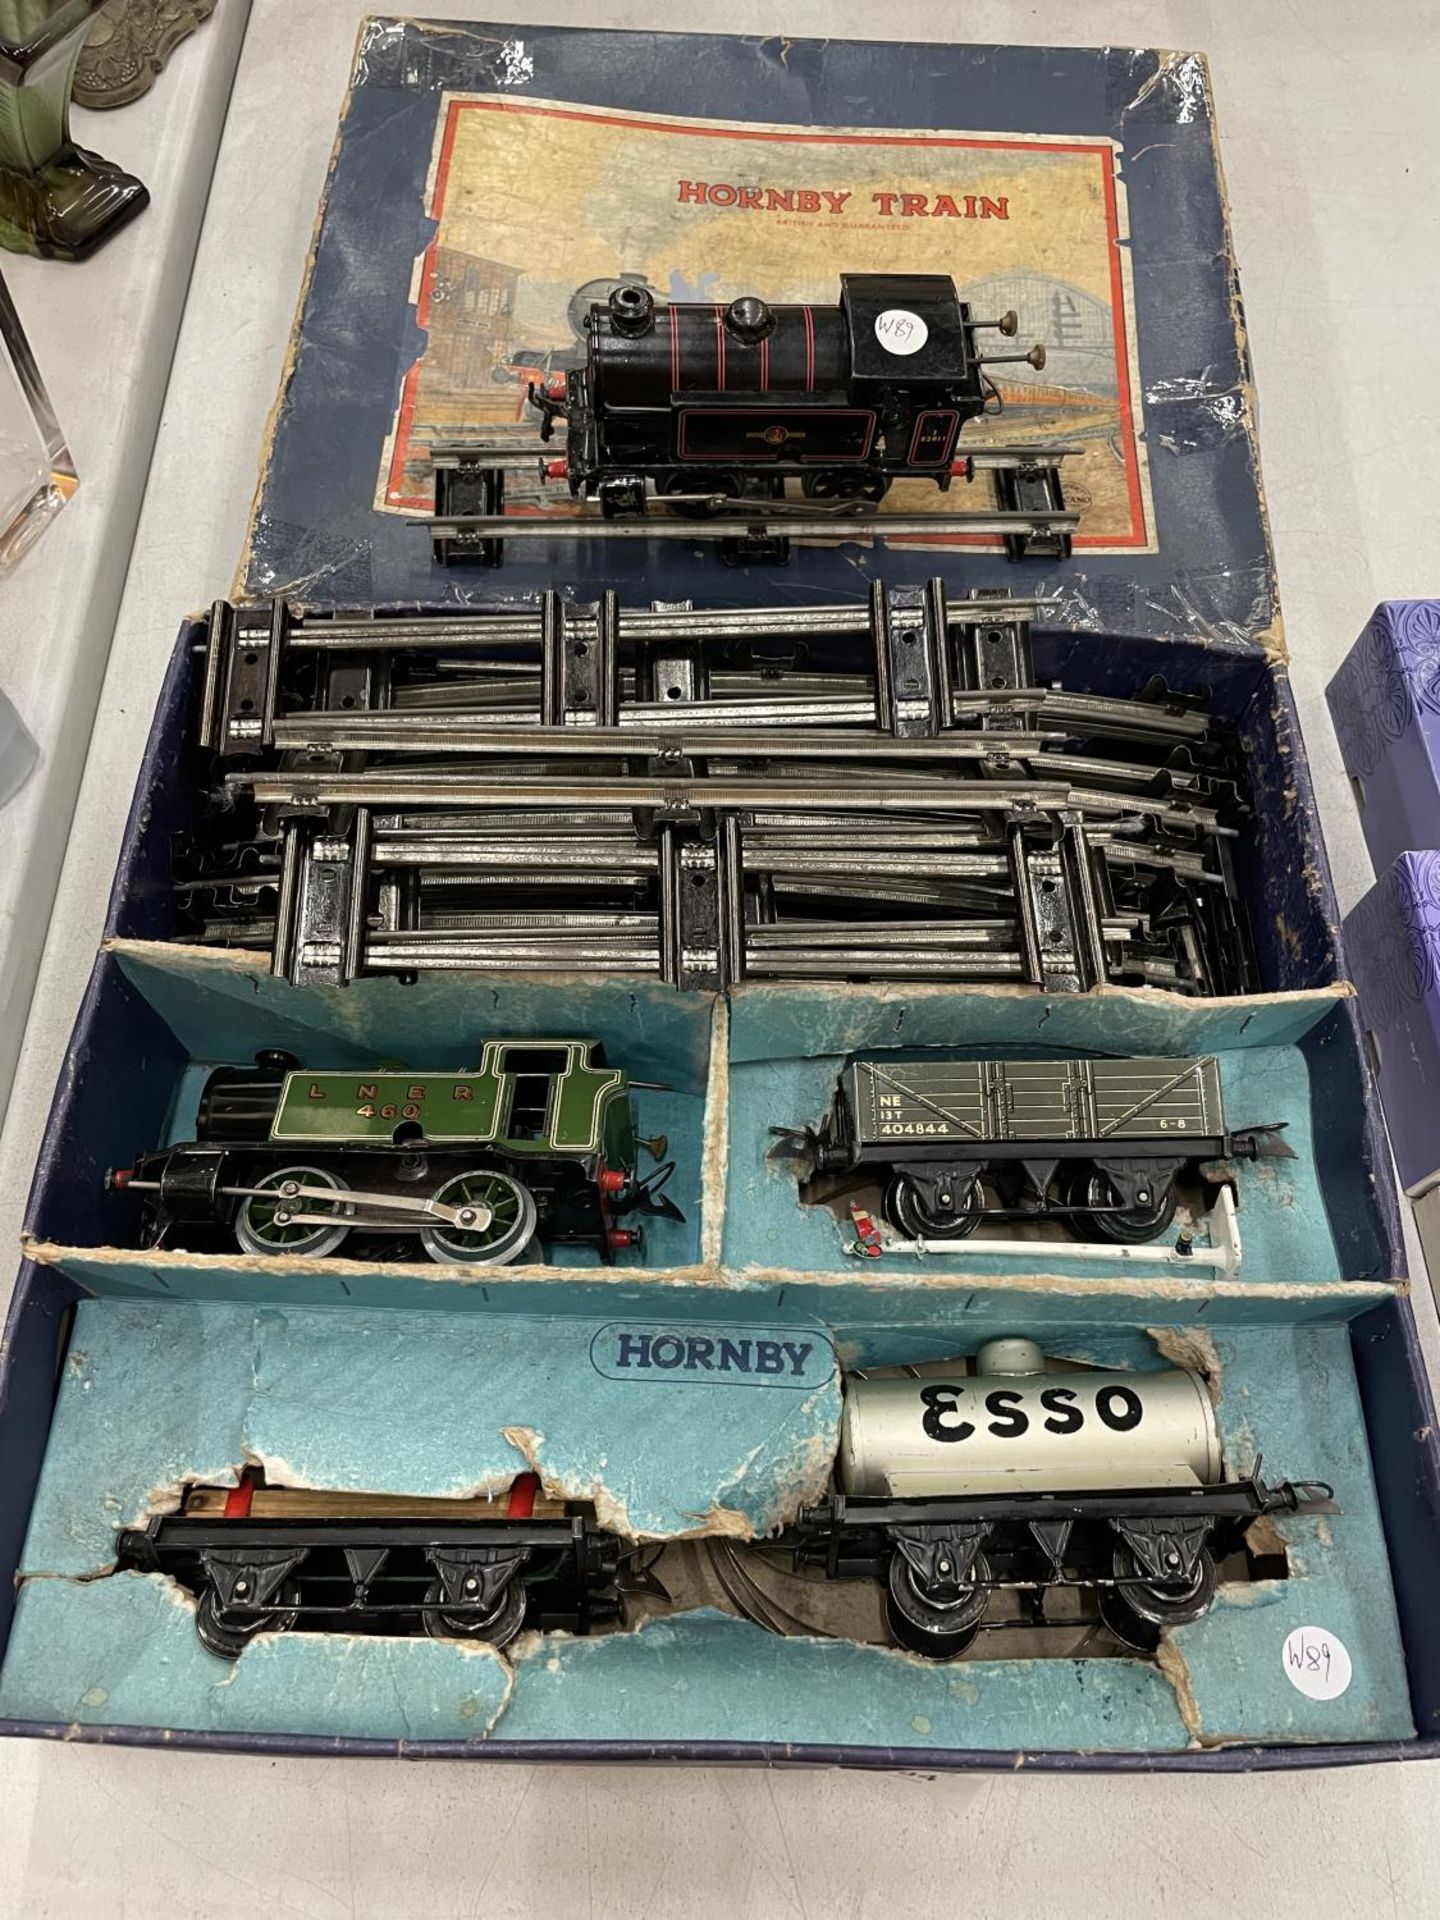 A HORNBY 'O' GAUGE TRAIN SET AND A HORNBY 'O' GAUGE BRITISH RAILWAYS LOCOMOTIVE IN ORIGINAL BOX. KEY